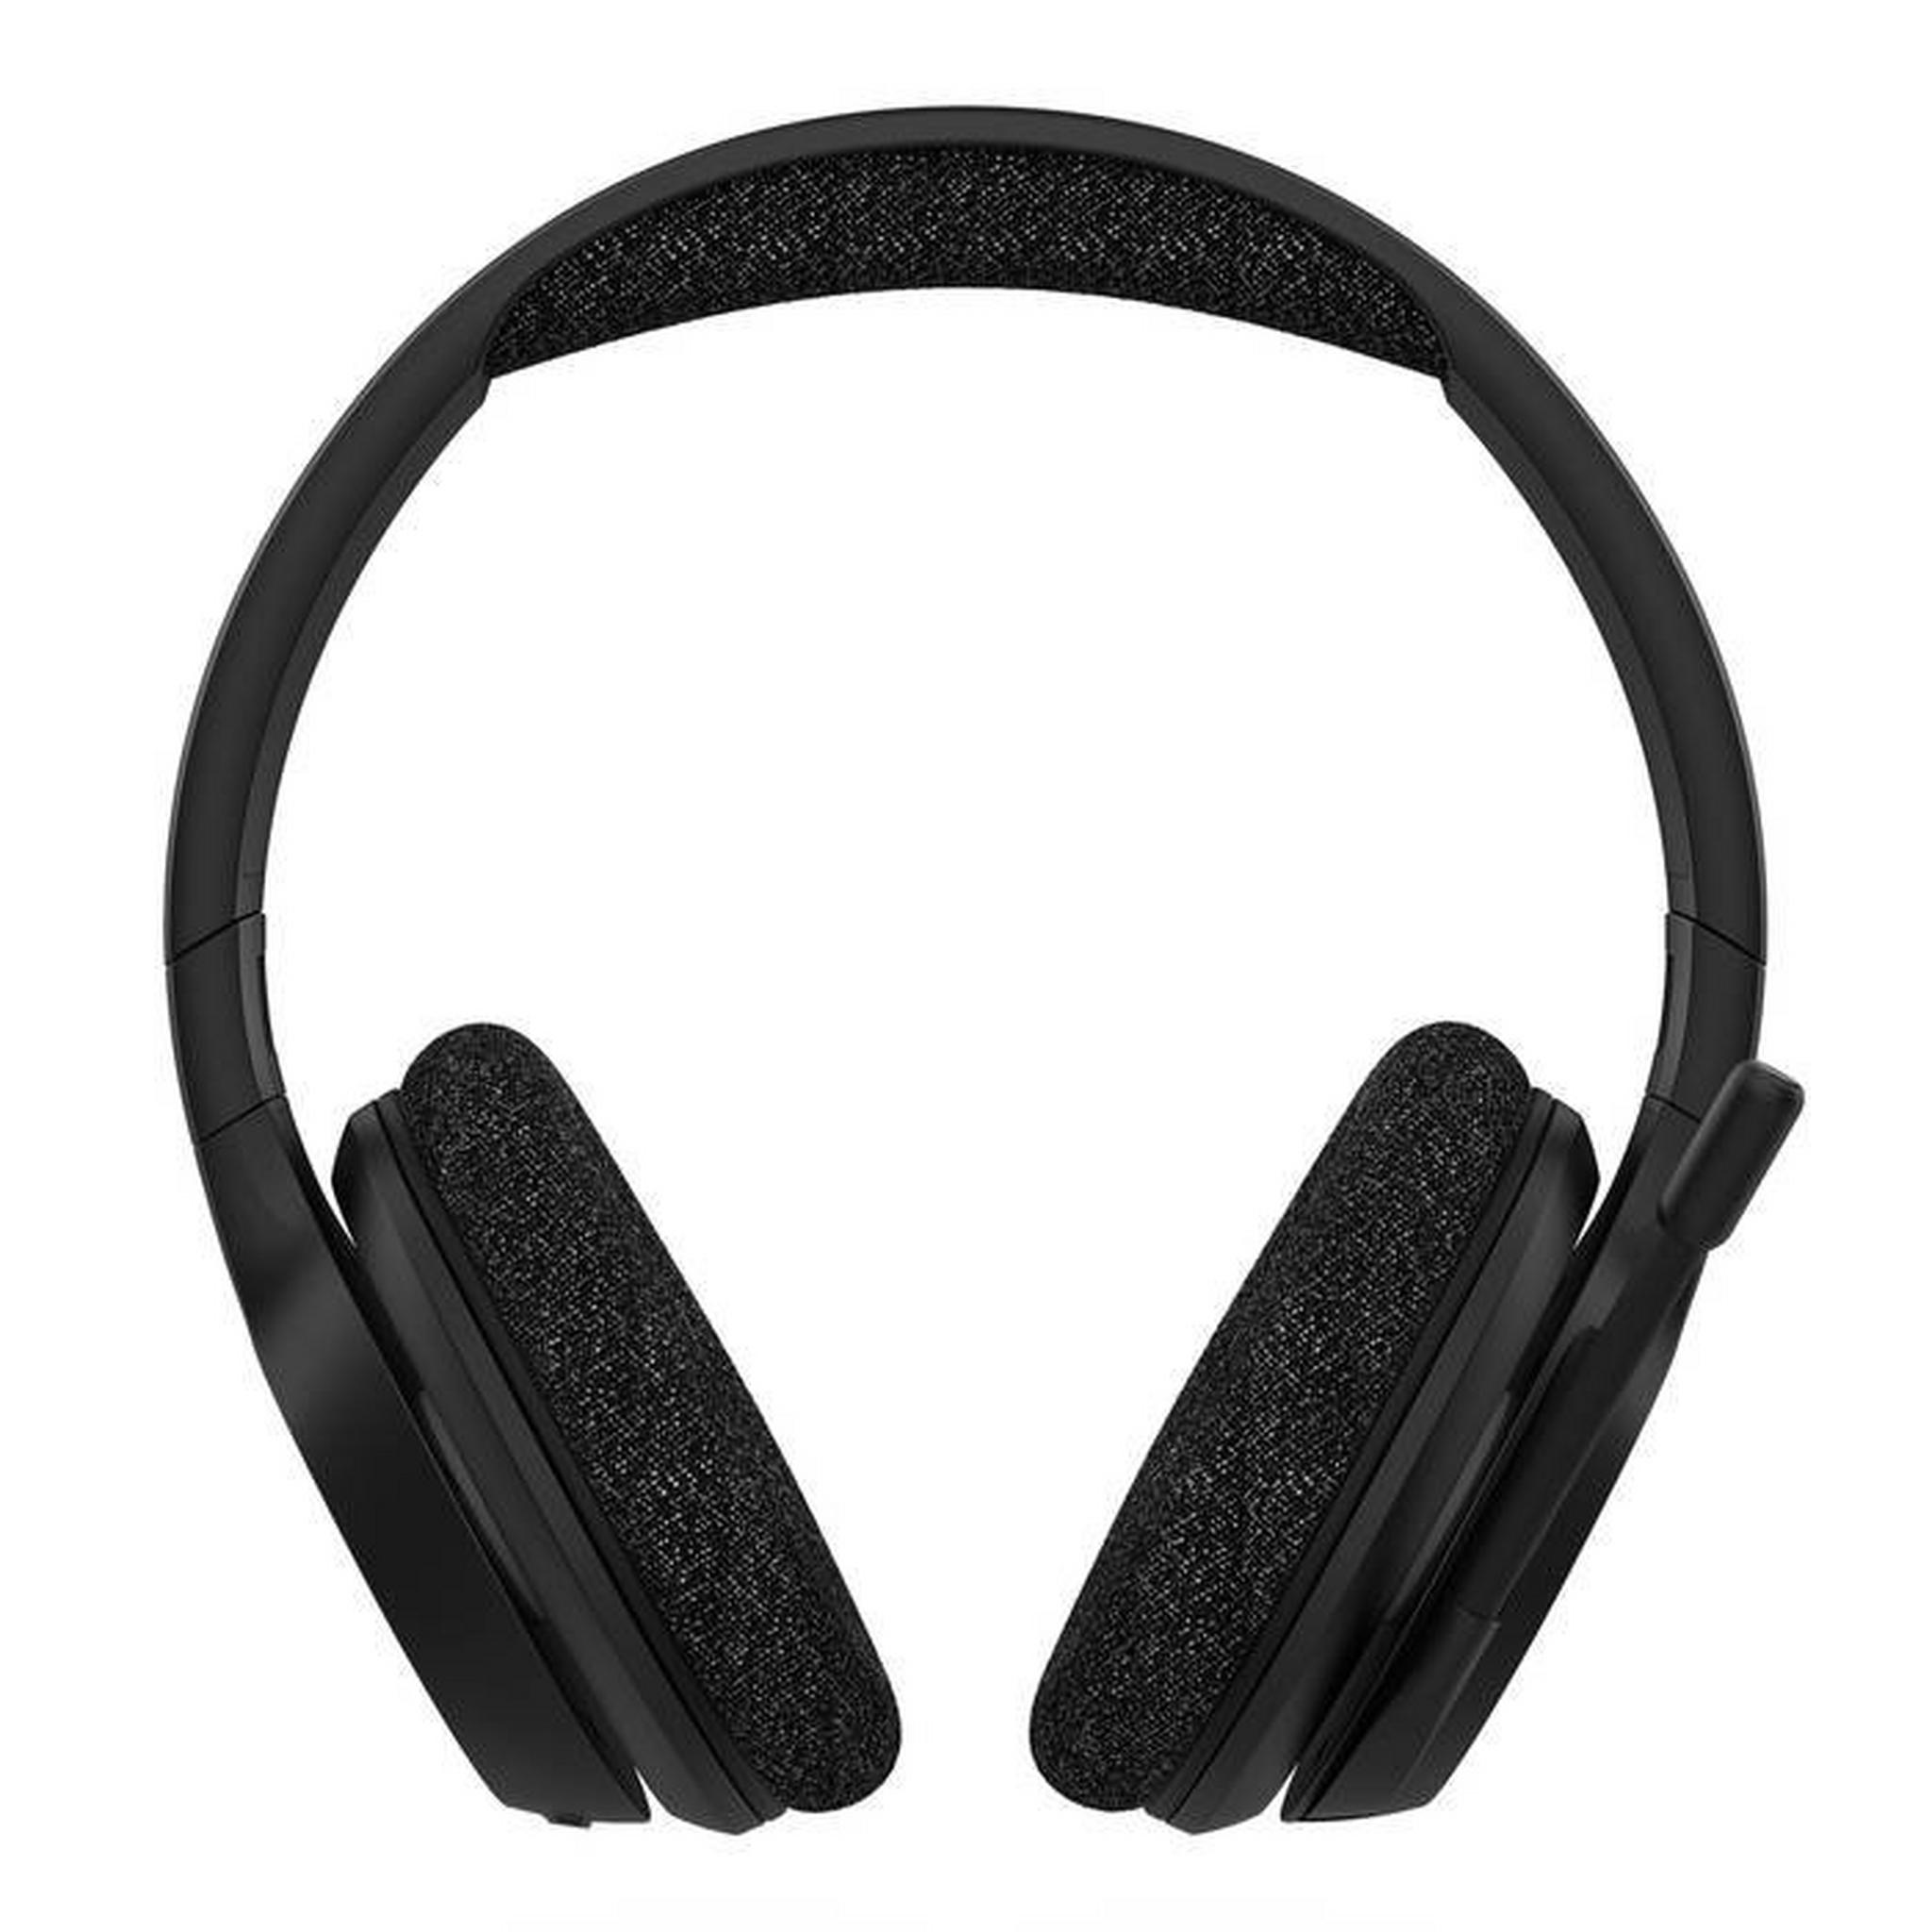 Belkin Soundform Adapt Wireless Headset, AUD005btBLK – Black